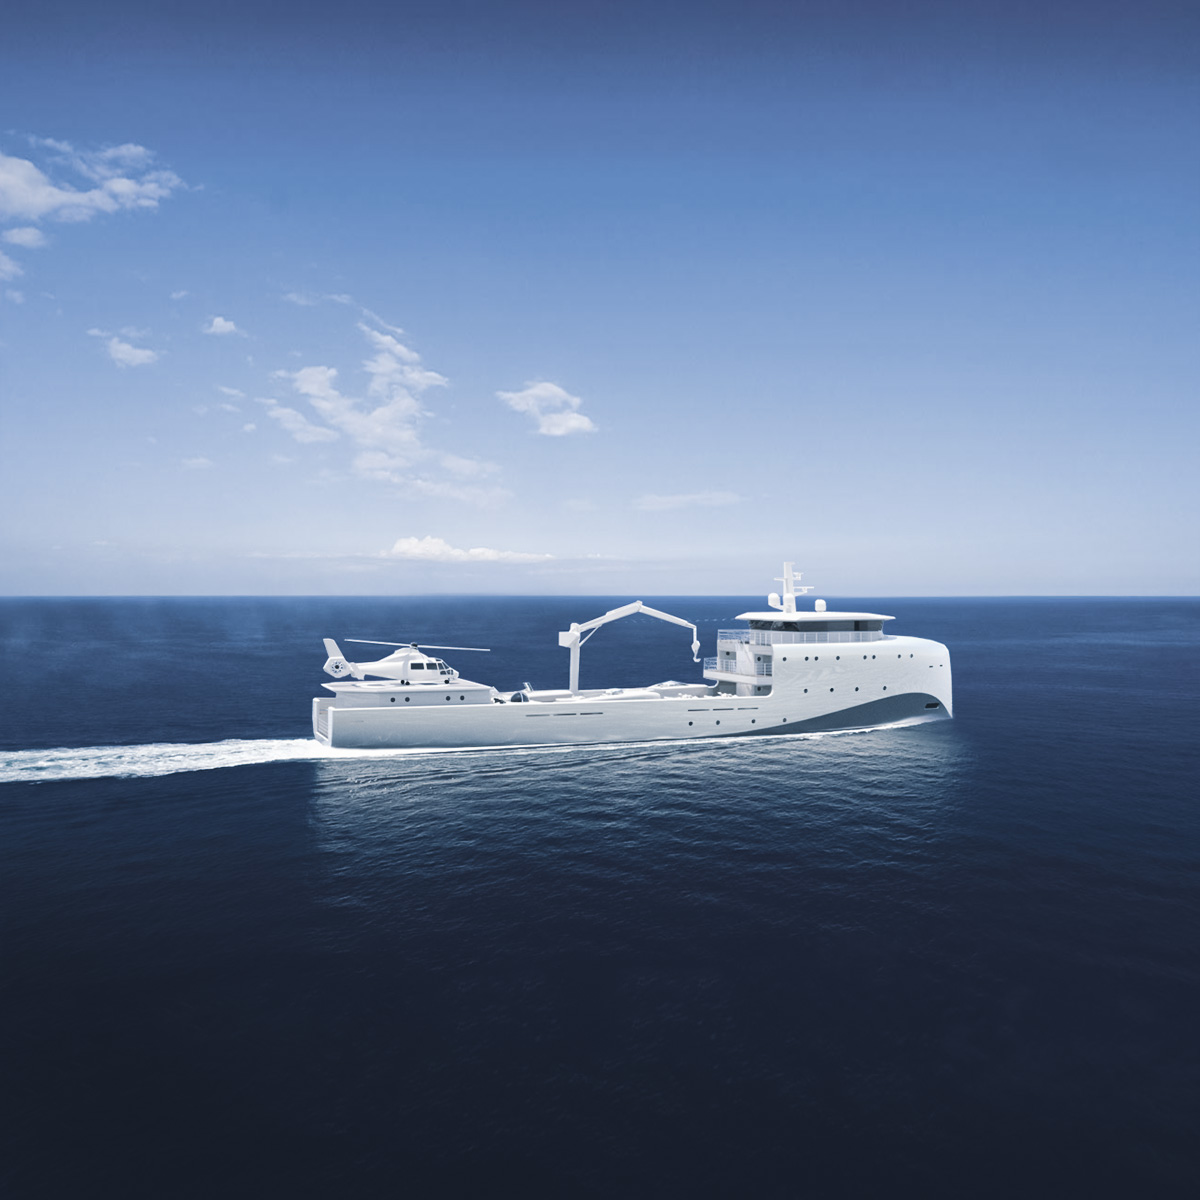 Marimecs Super Yacht support vessel